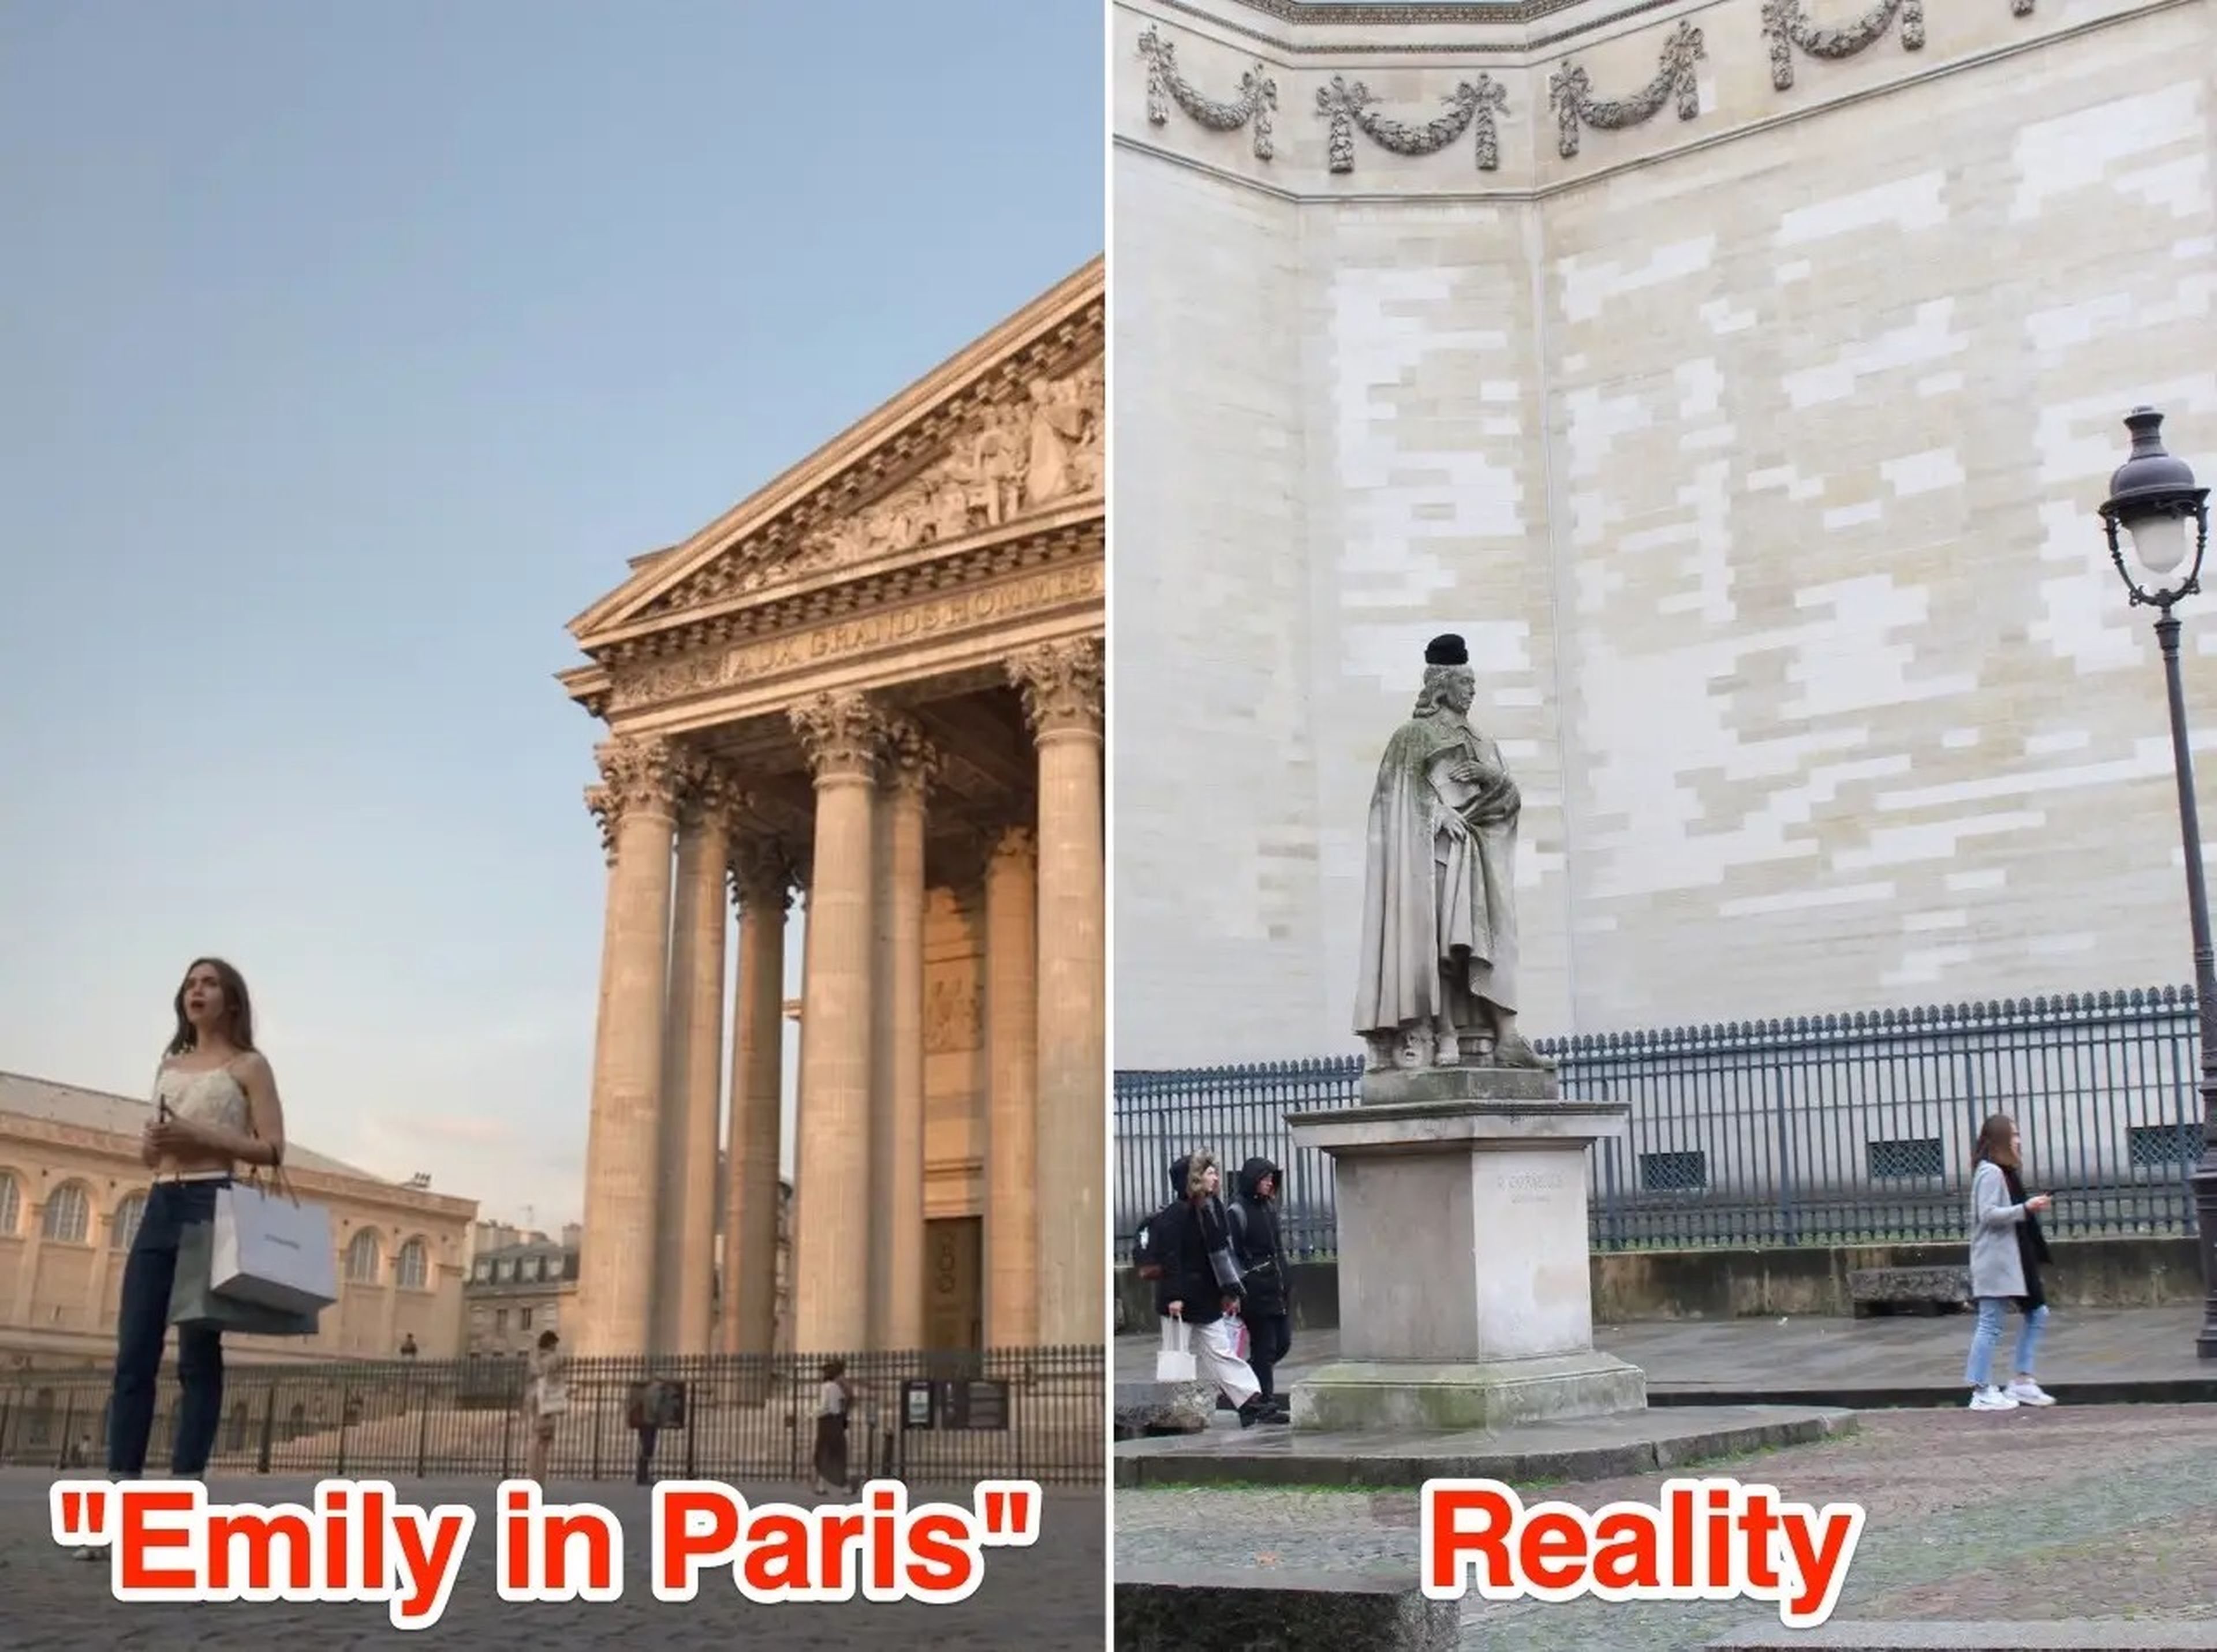 El Panteón de París en la serie y en la realidad.